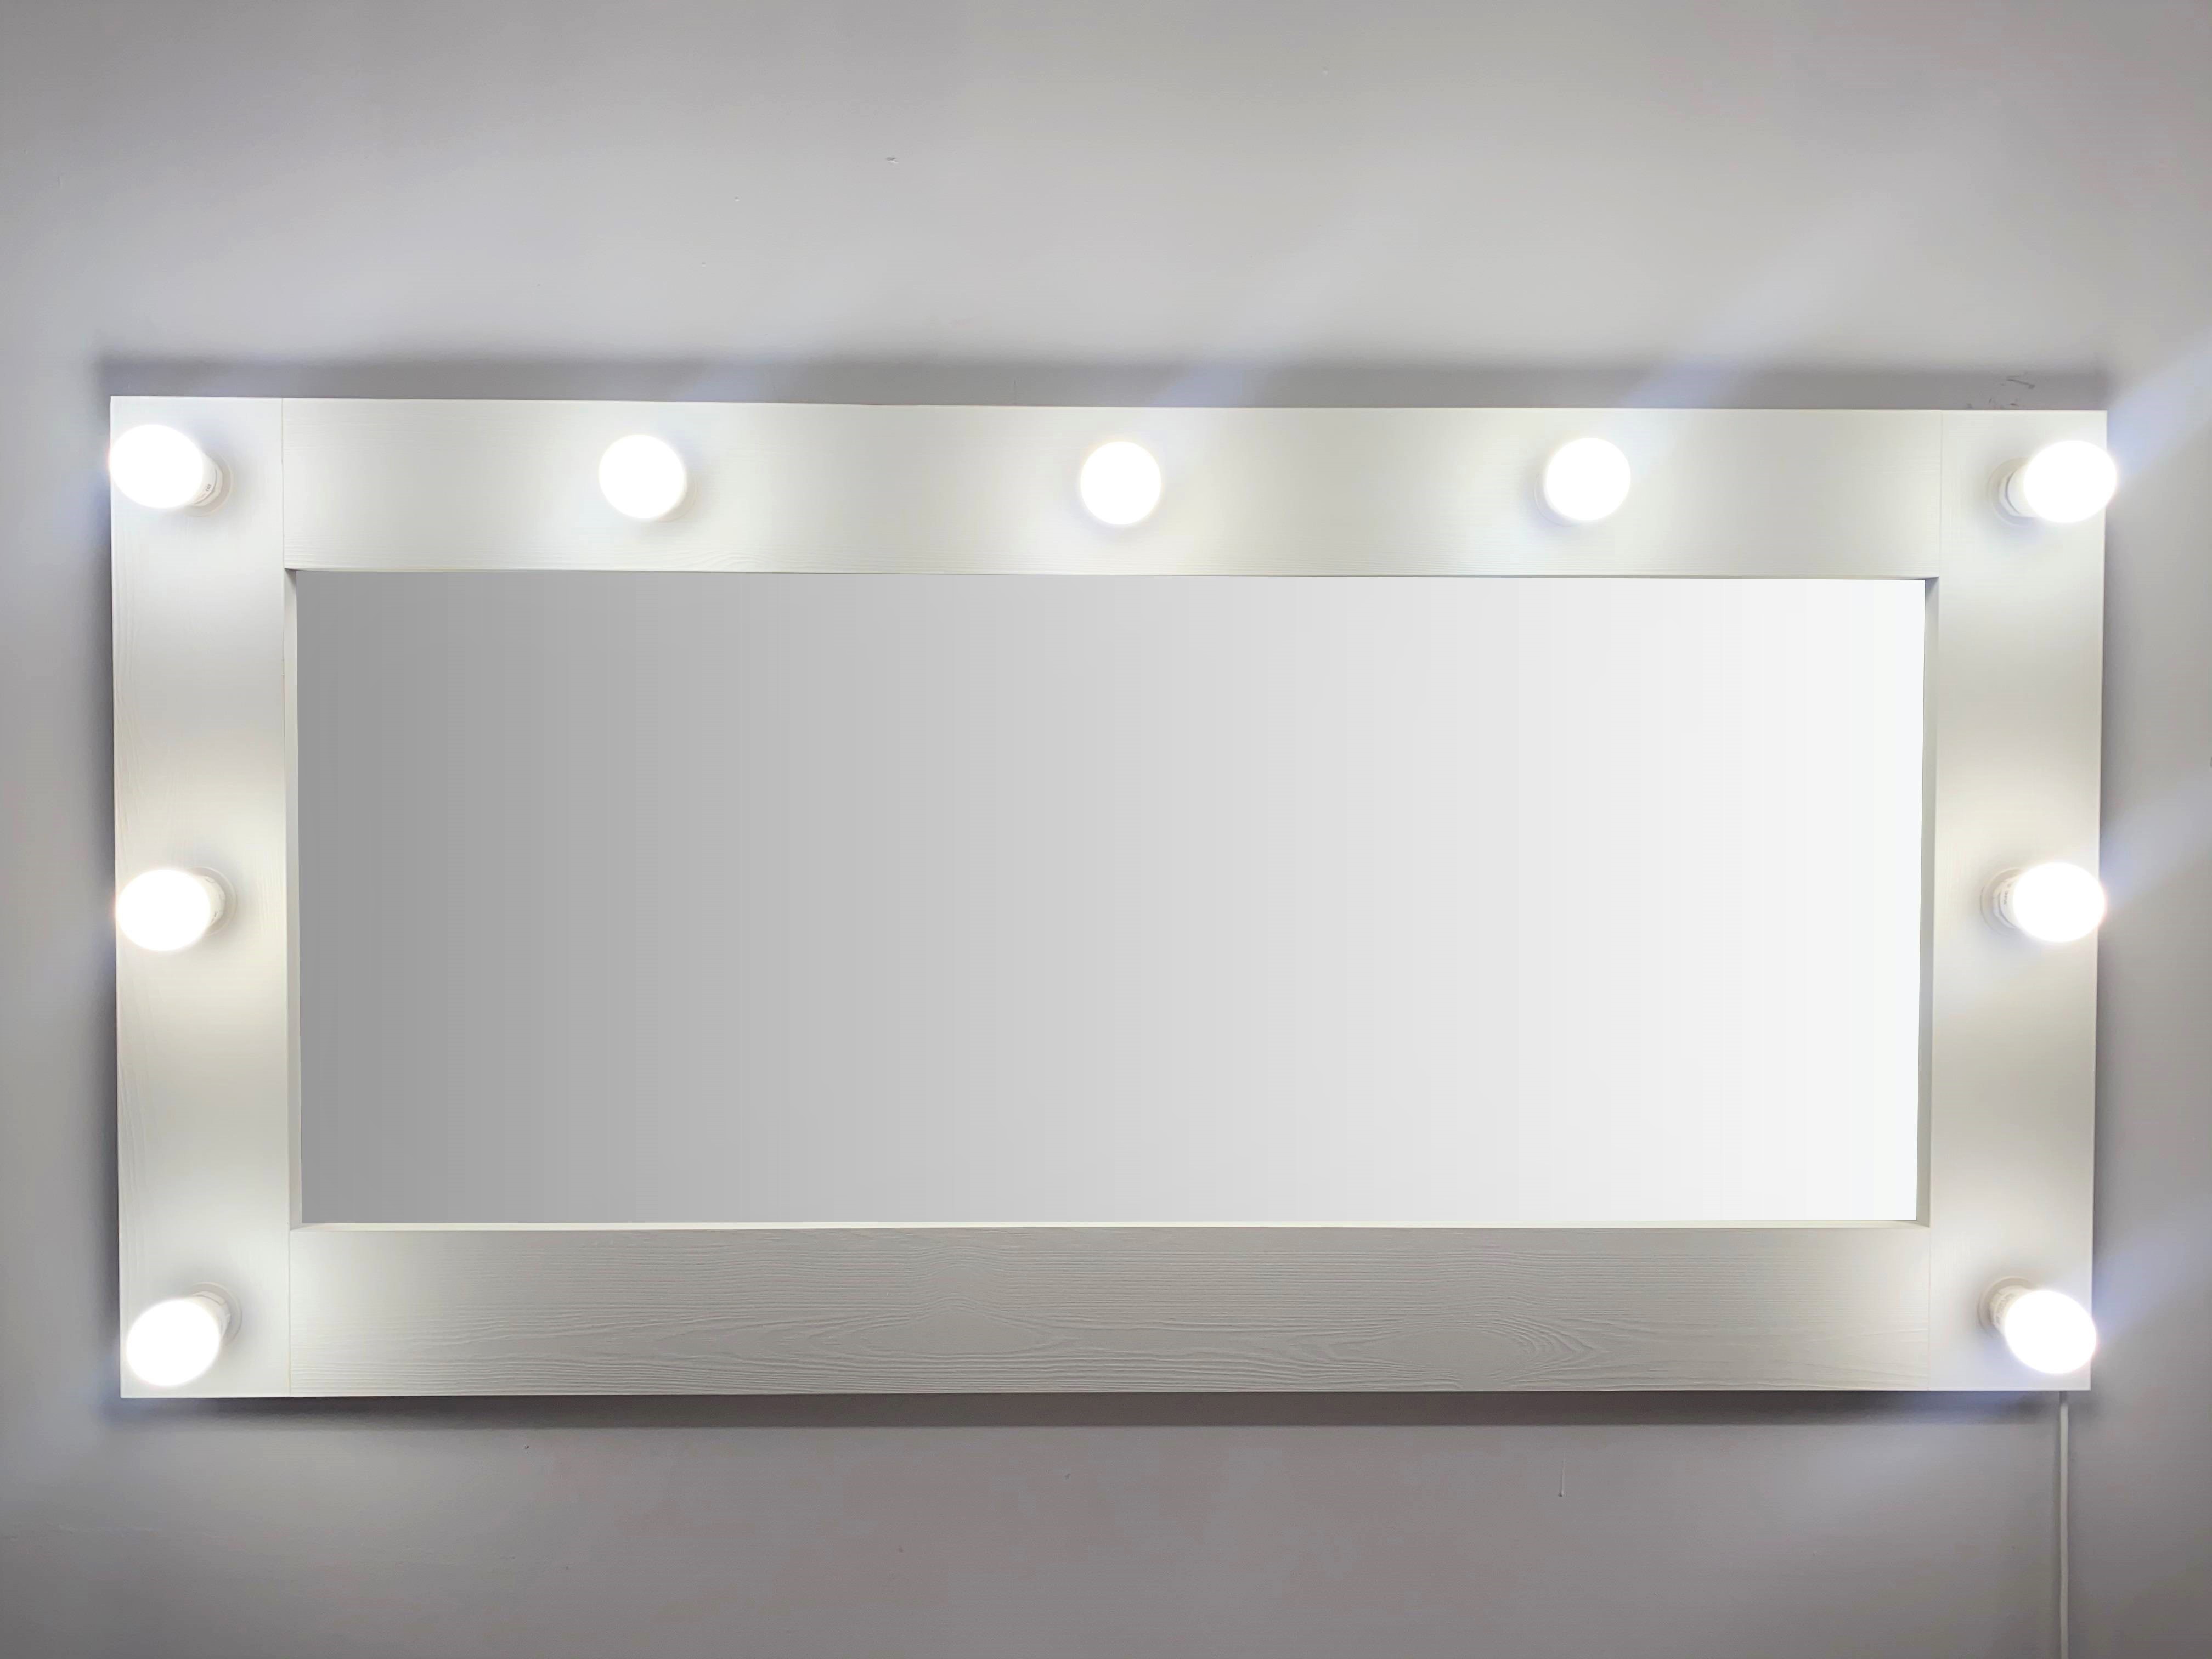 91053084 Гримерное зеркало с лампочками 60x120 см цвет белый STLM-0458994 BEAUTYUP